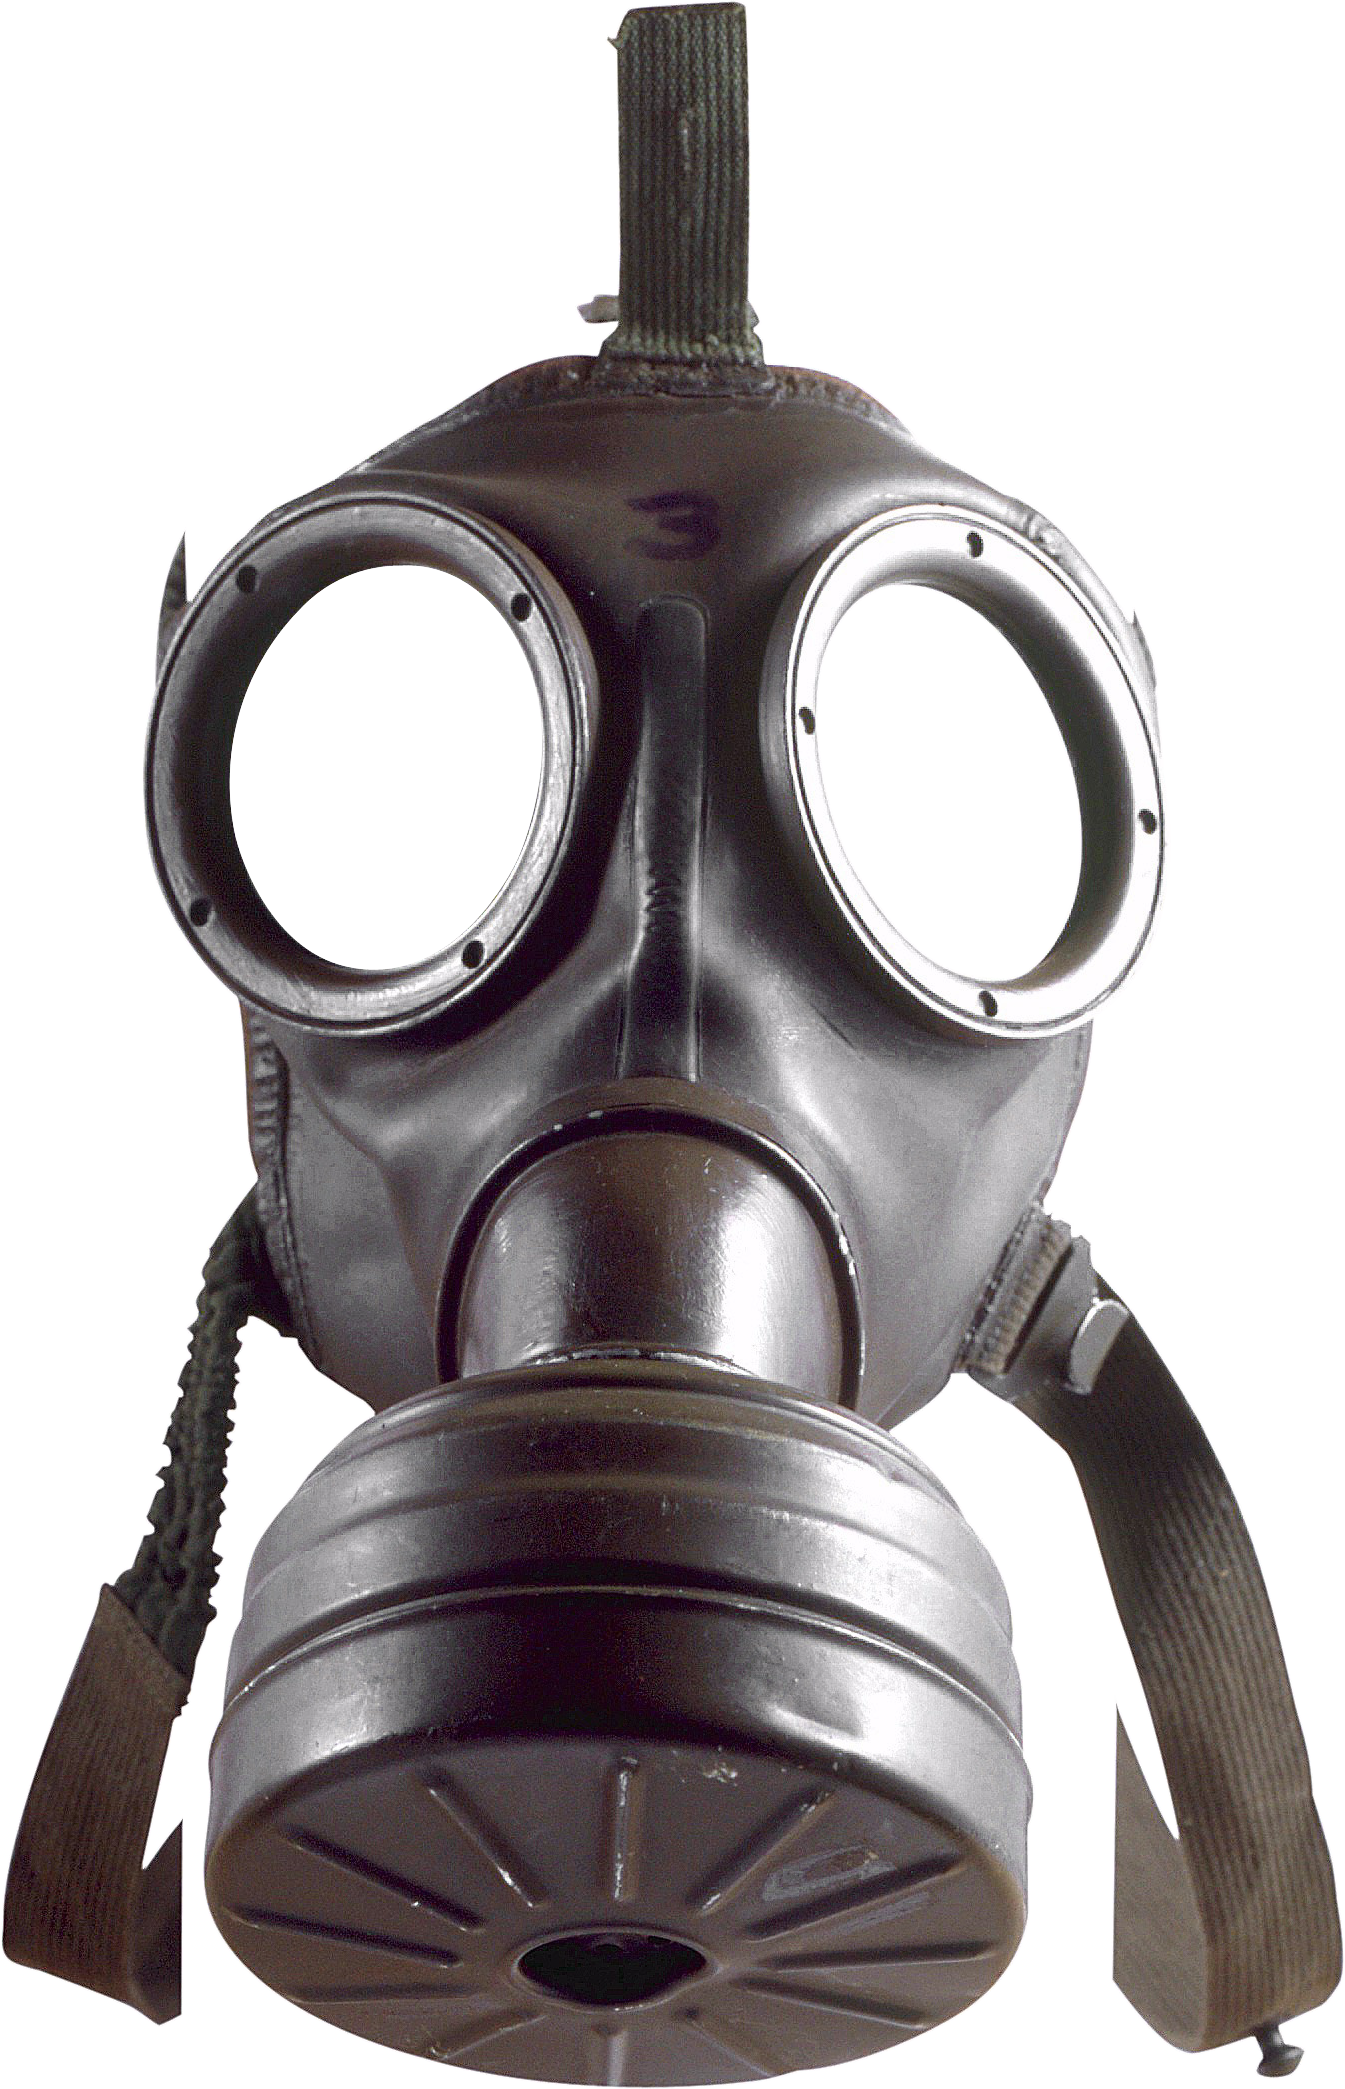 Maska gazowa